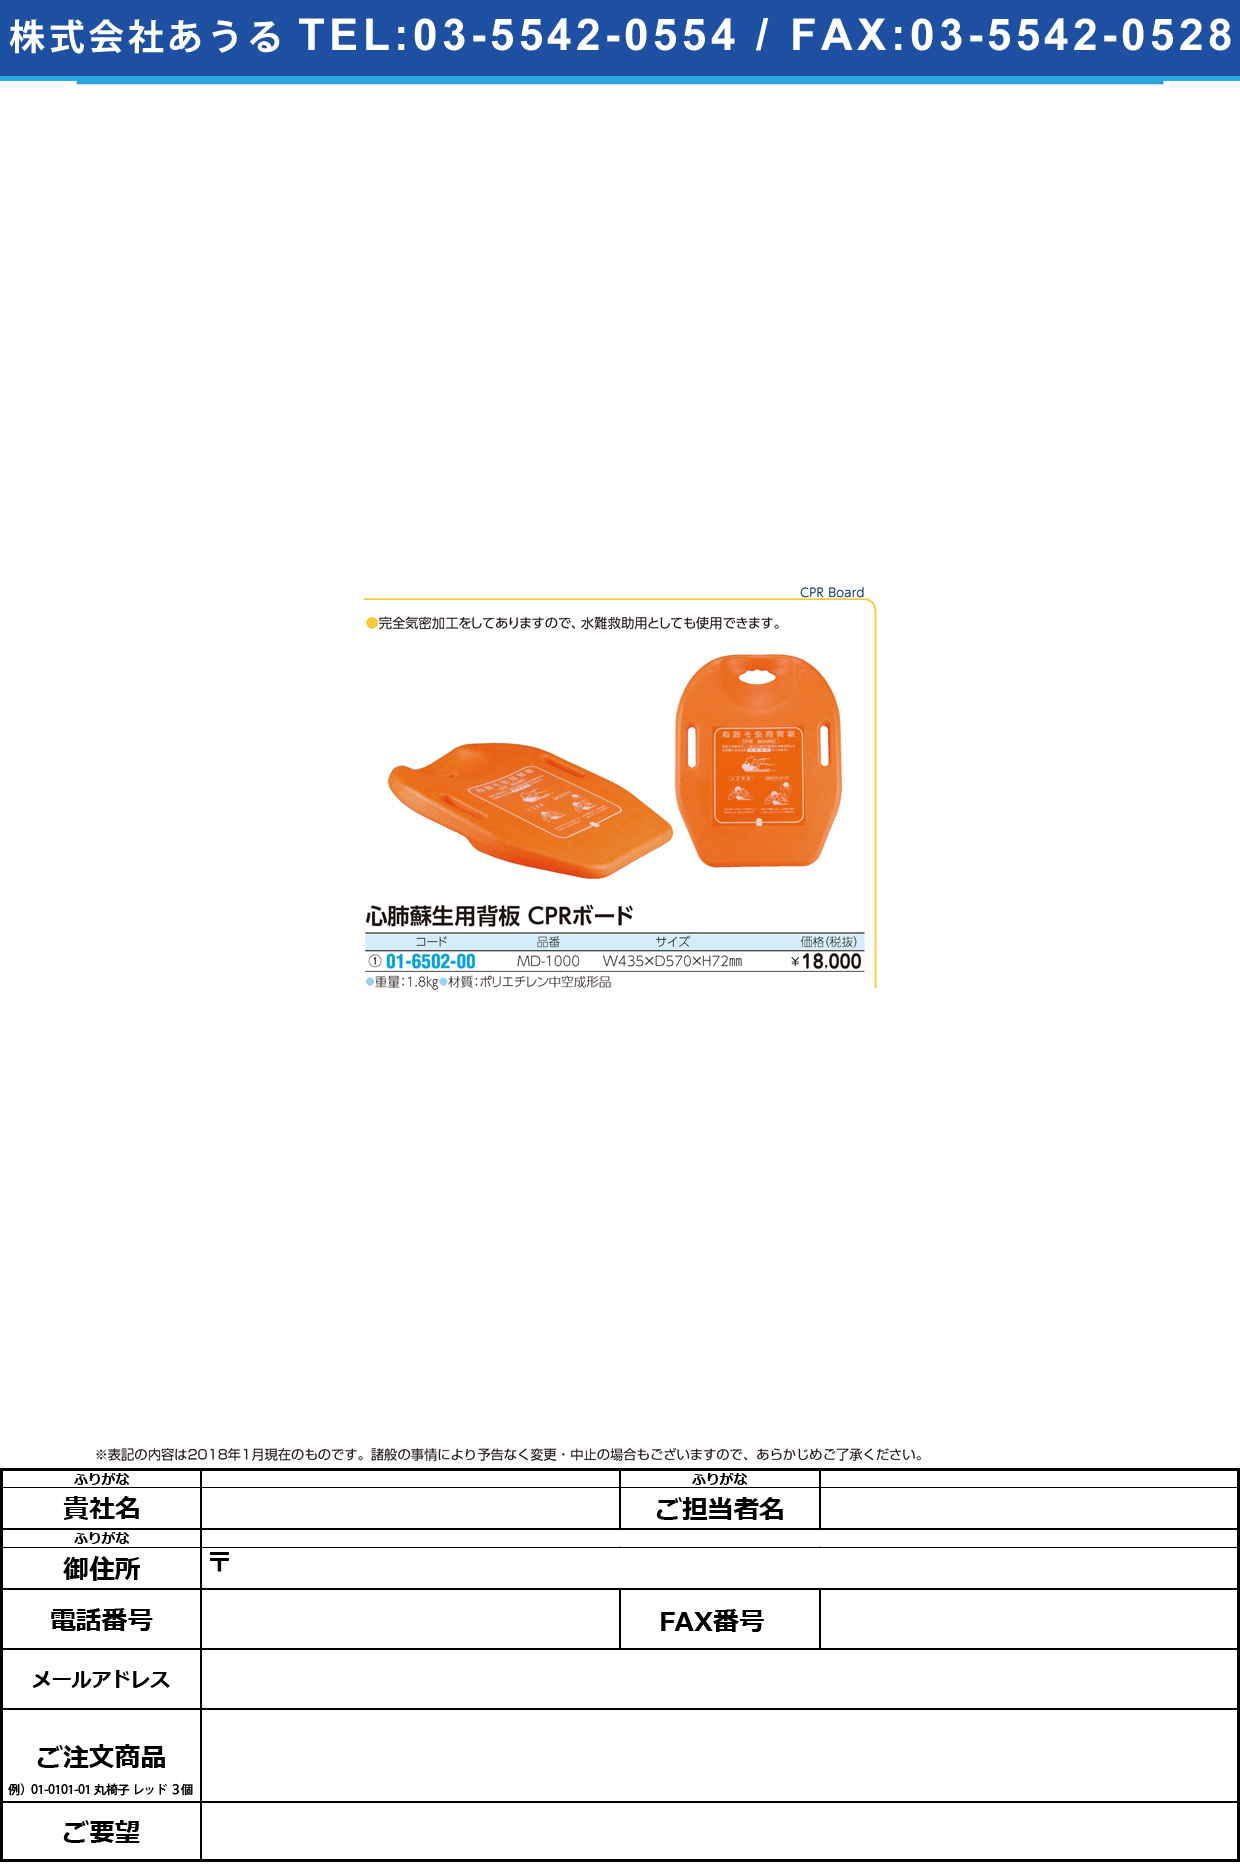 (01-6502-00)心肺蘇生用背板ＣＰＲボード MD-1000 ｼﾝﾊﾟｲｿｾｲﾖｳﾊｲﾊﾞﾝ【1枚単位】【2019年カタログ商品】